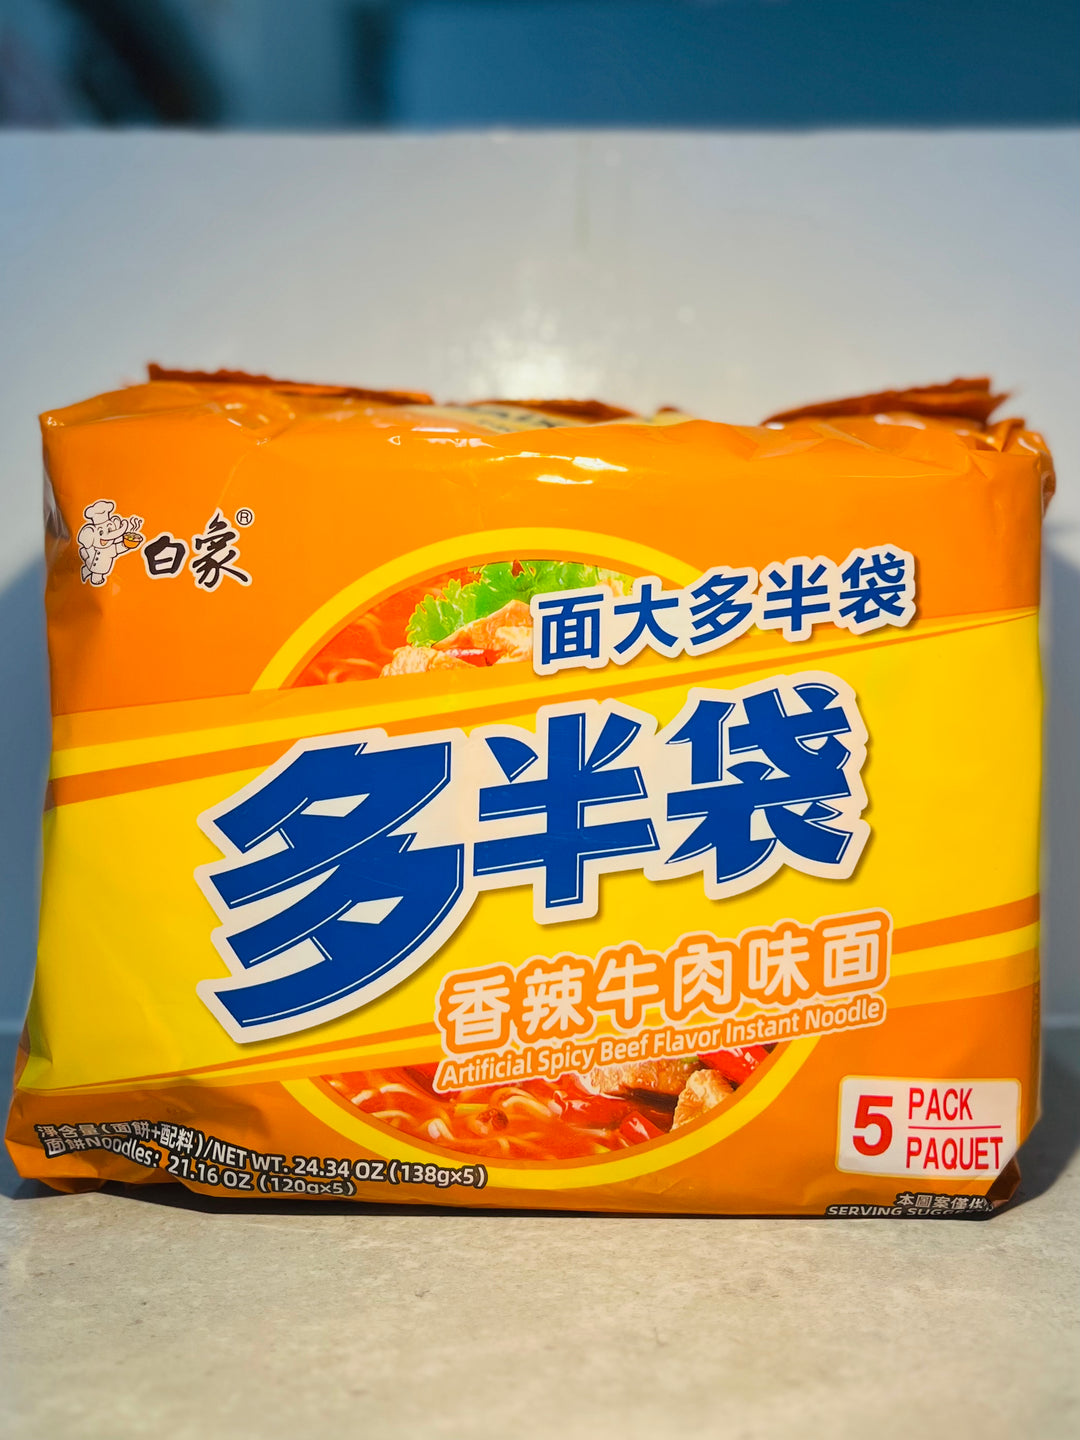 白象多半袋香辣牛肉面5pck 690g Baixiang Instant Noodle Hot Beef